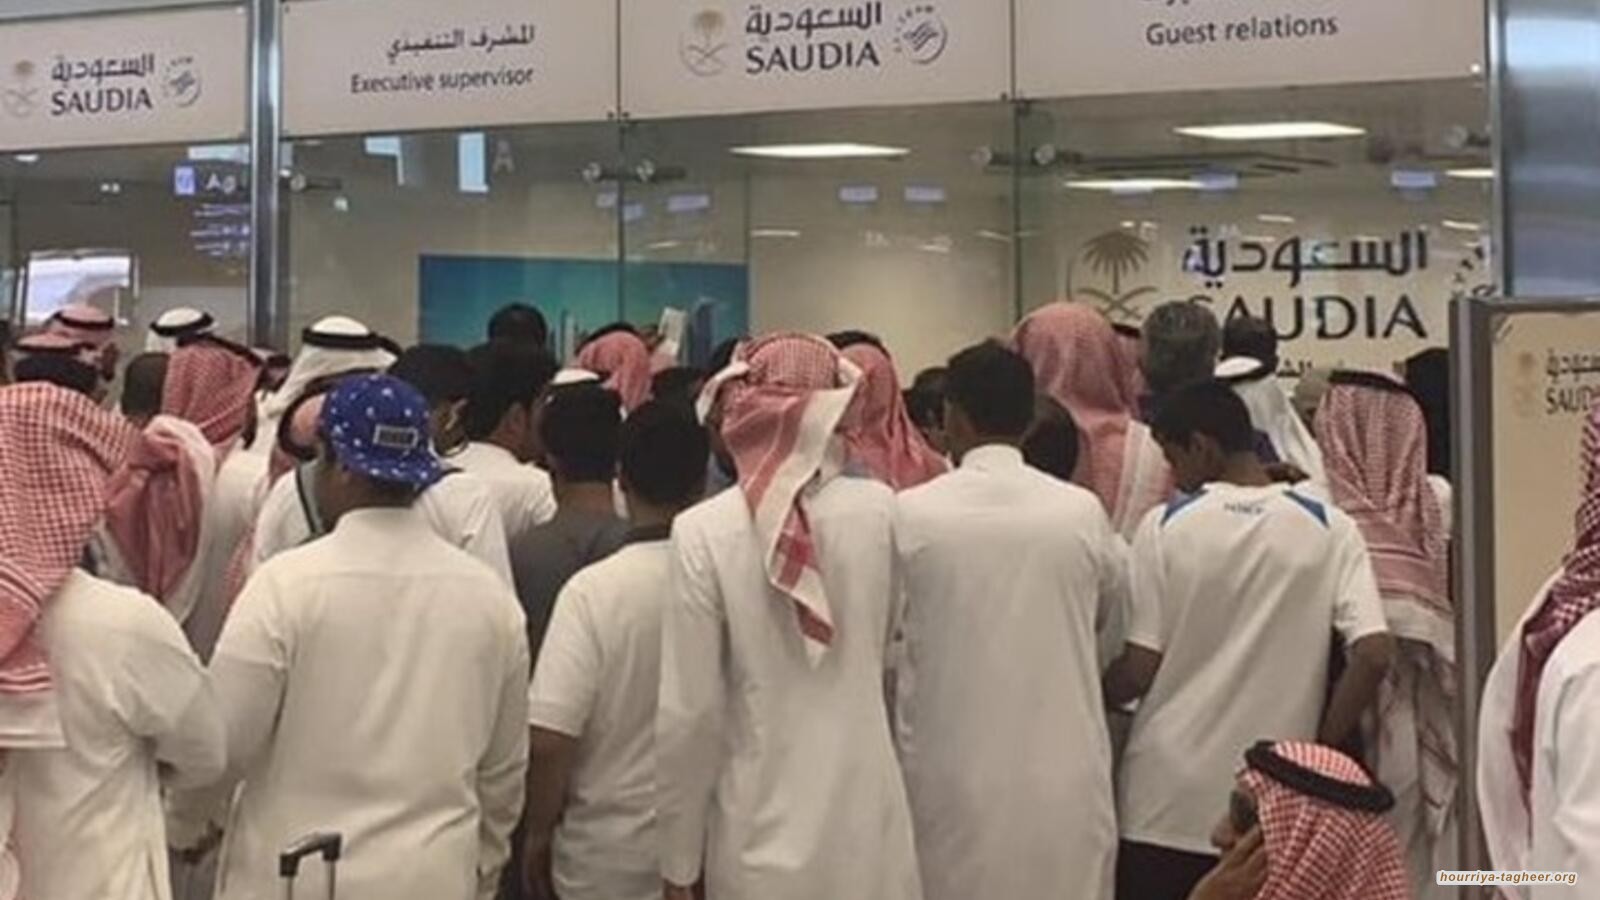 دراسة دولية تكذب الدعاية الحكومية بشأن انخفاض البطالة في السعودية